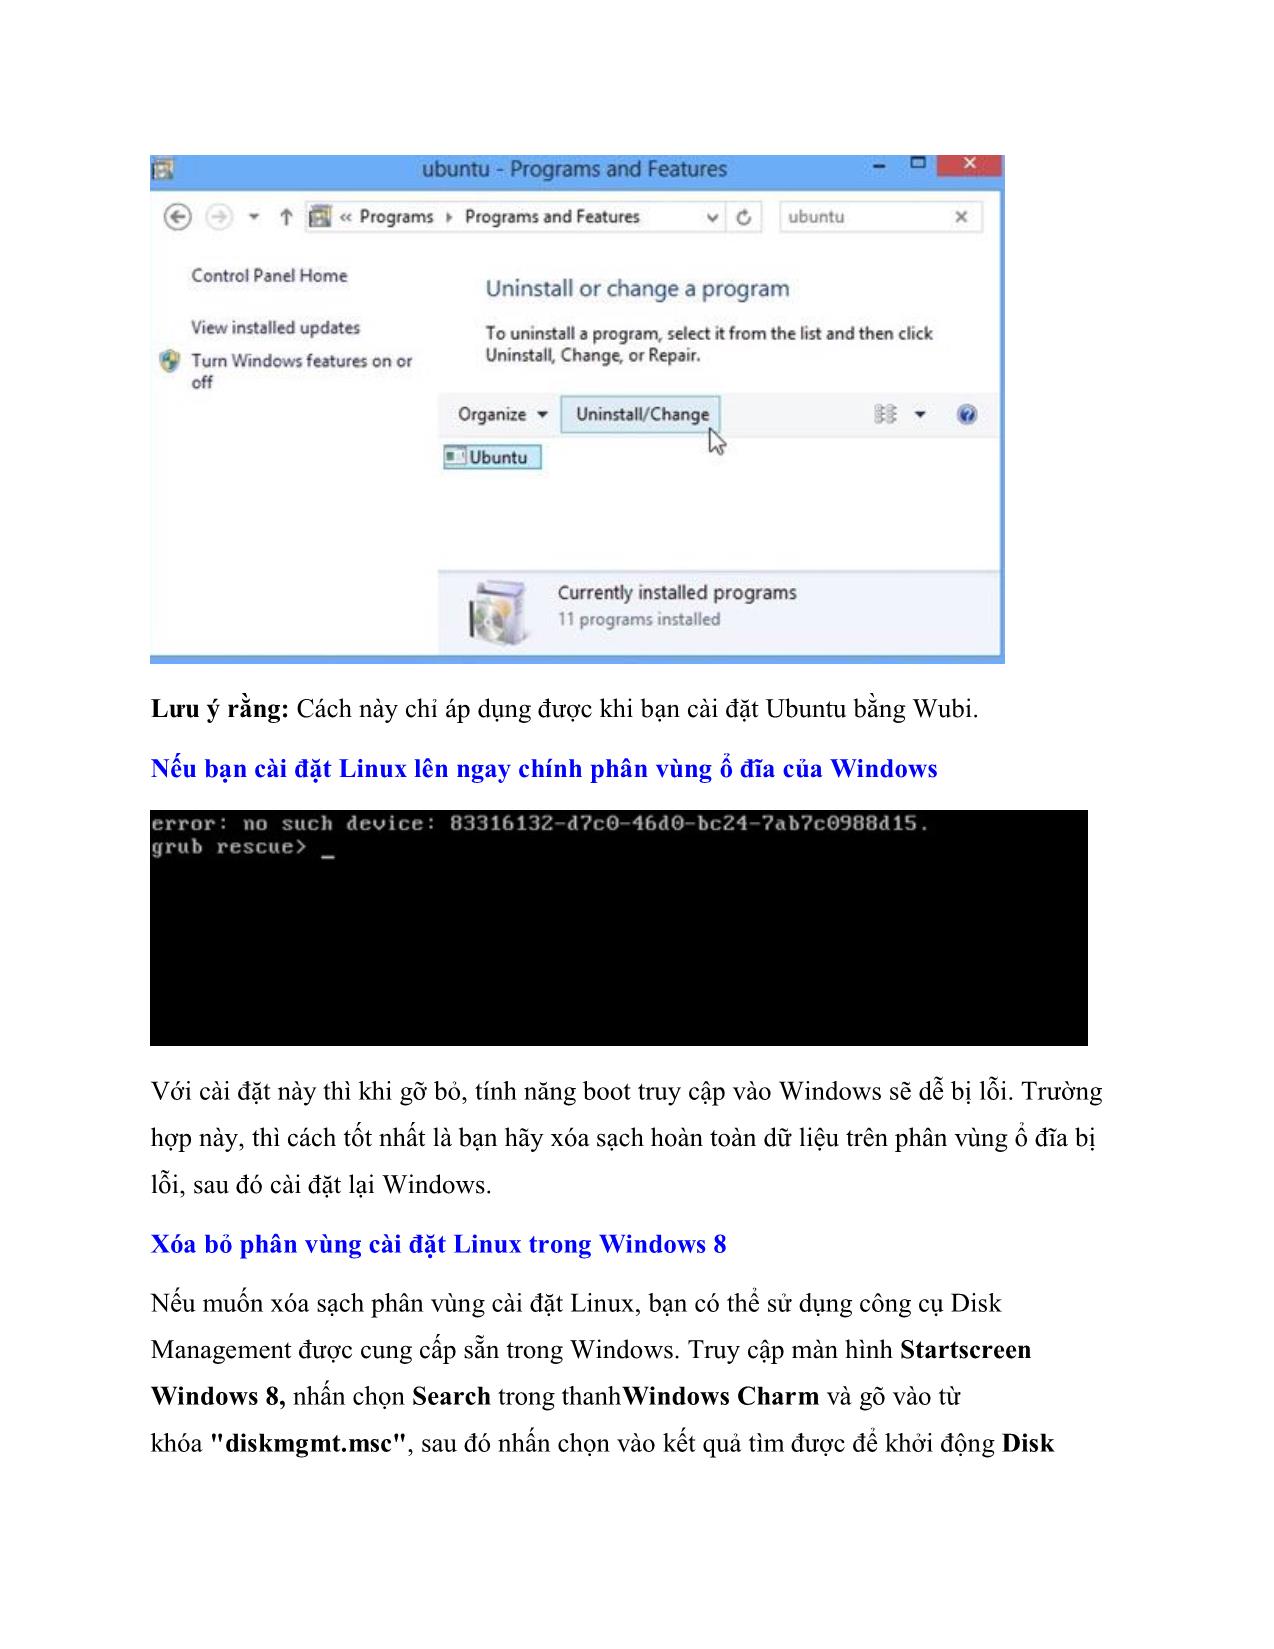 Những cách gỡ bỏ hệ điều hành nhân Linux được cài song song Windows 8 trang 2